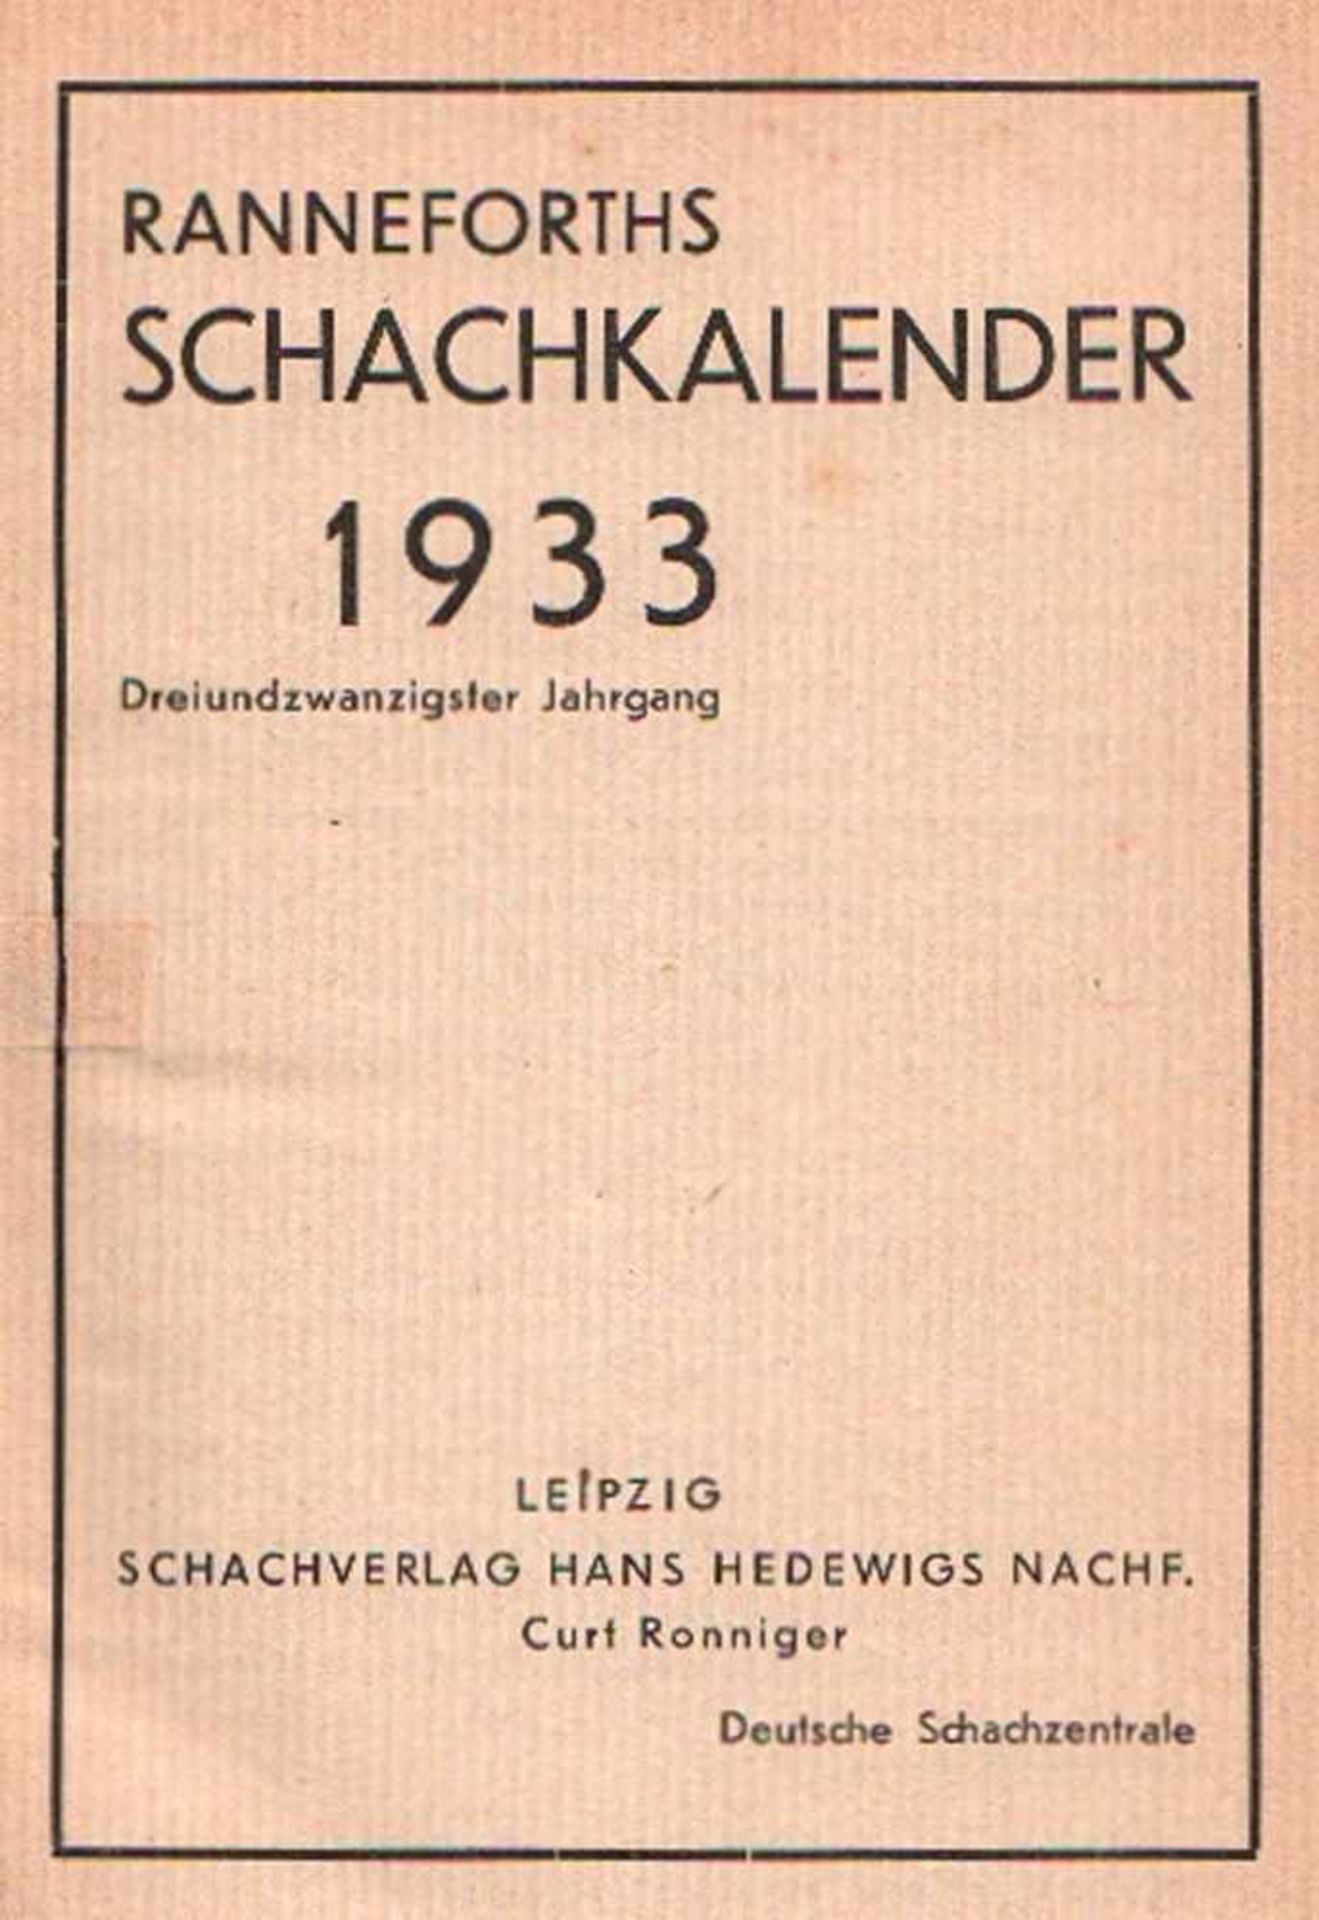 Ranneforths Schachkalender 1933. 23. Jahrgang. Leipzig, Ronniger, ca. 1932. 8°. Mit Diagrammen.